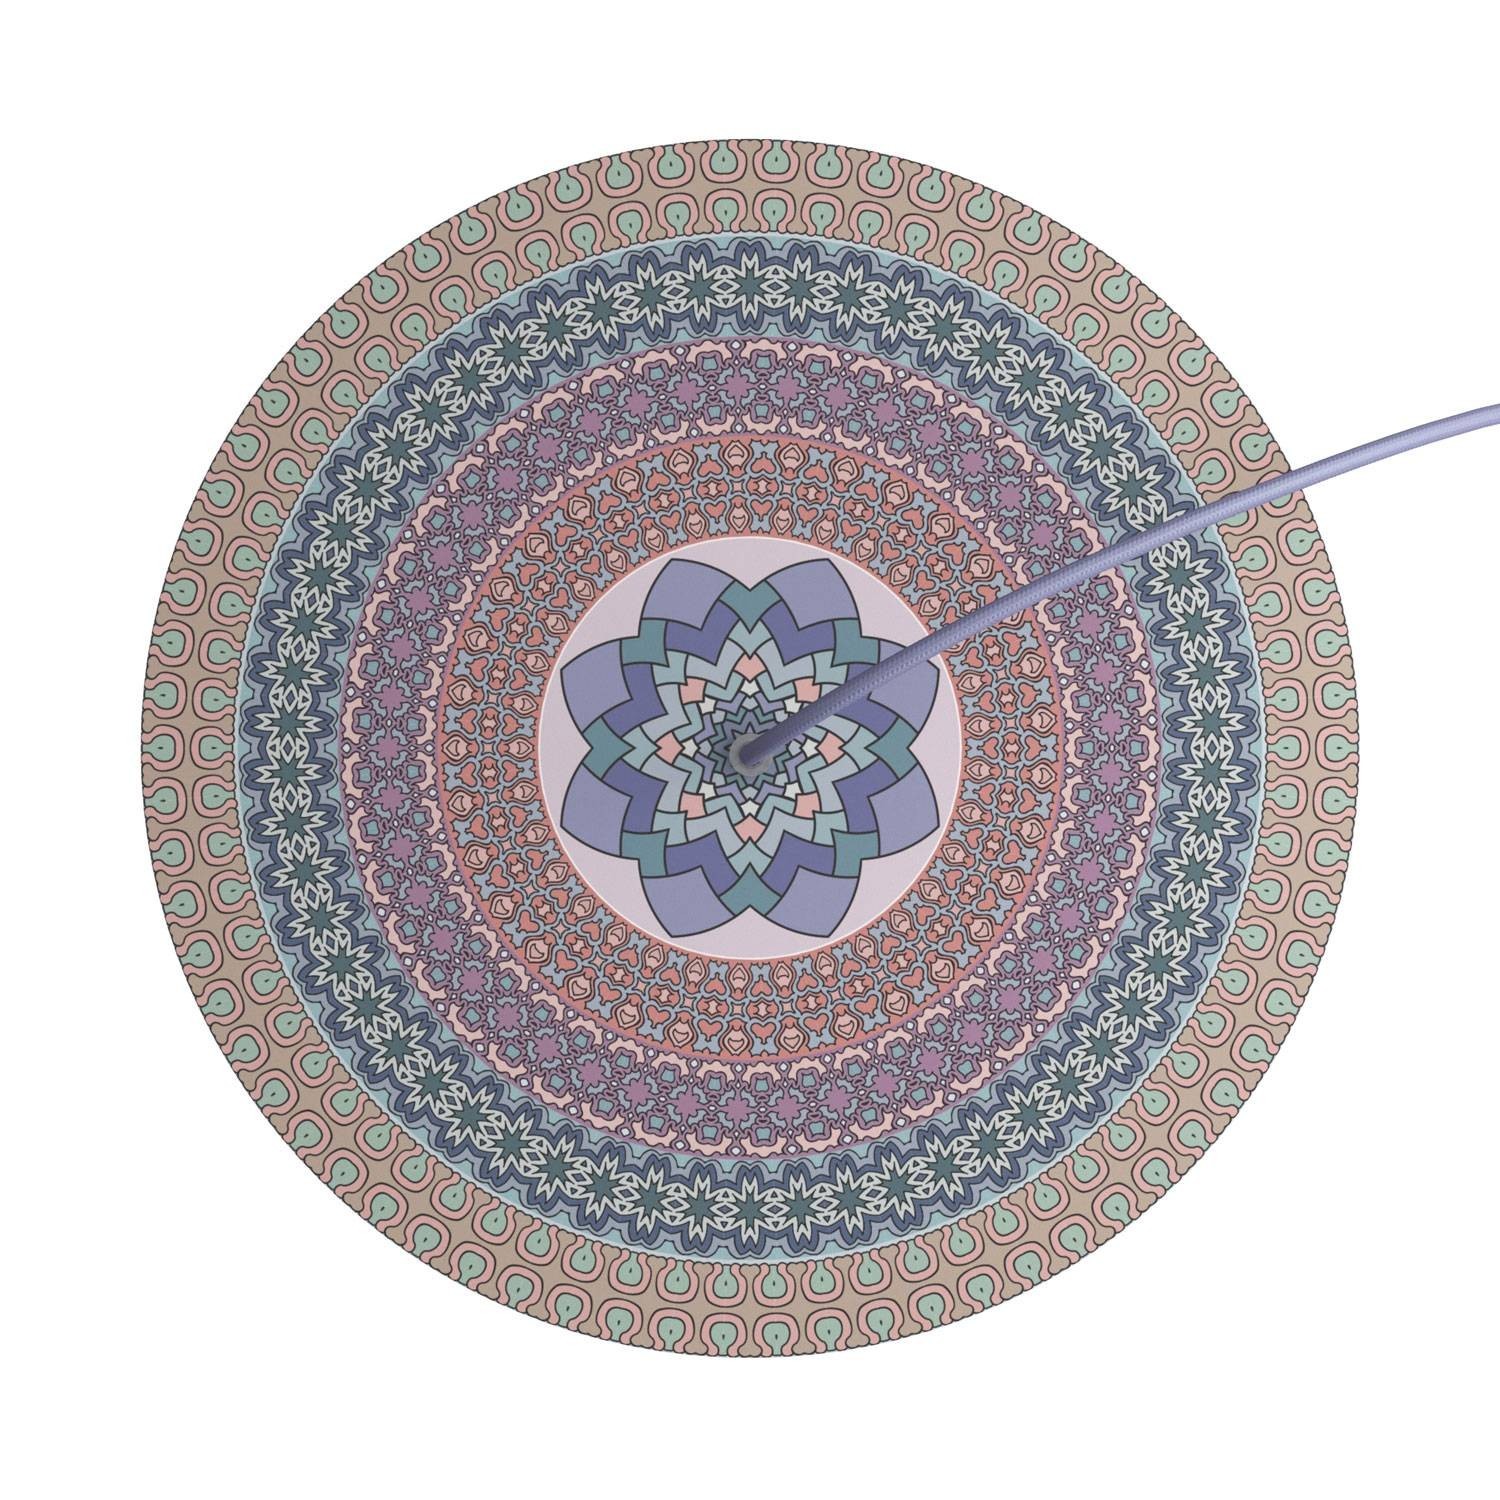 Velika okrugla dekoracija za stropnu rozetu 400 mm - Rose-One sistem s 1 rupom i 4 bočne rupe - PROMO